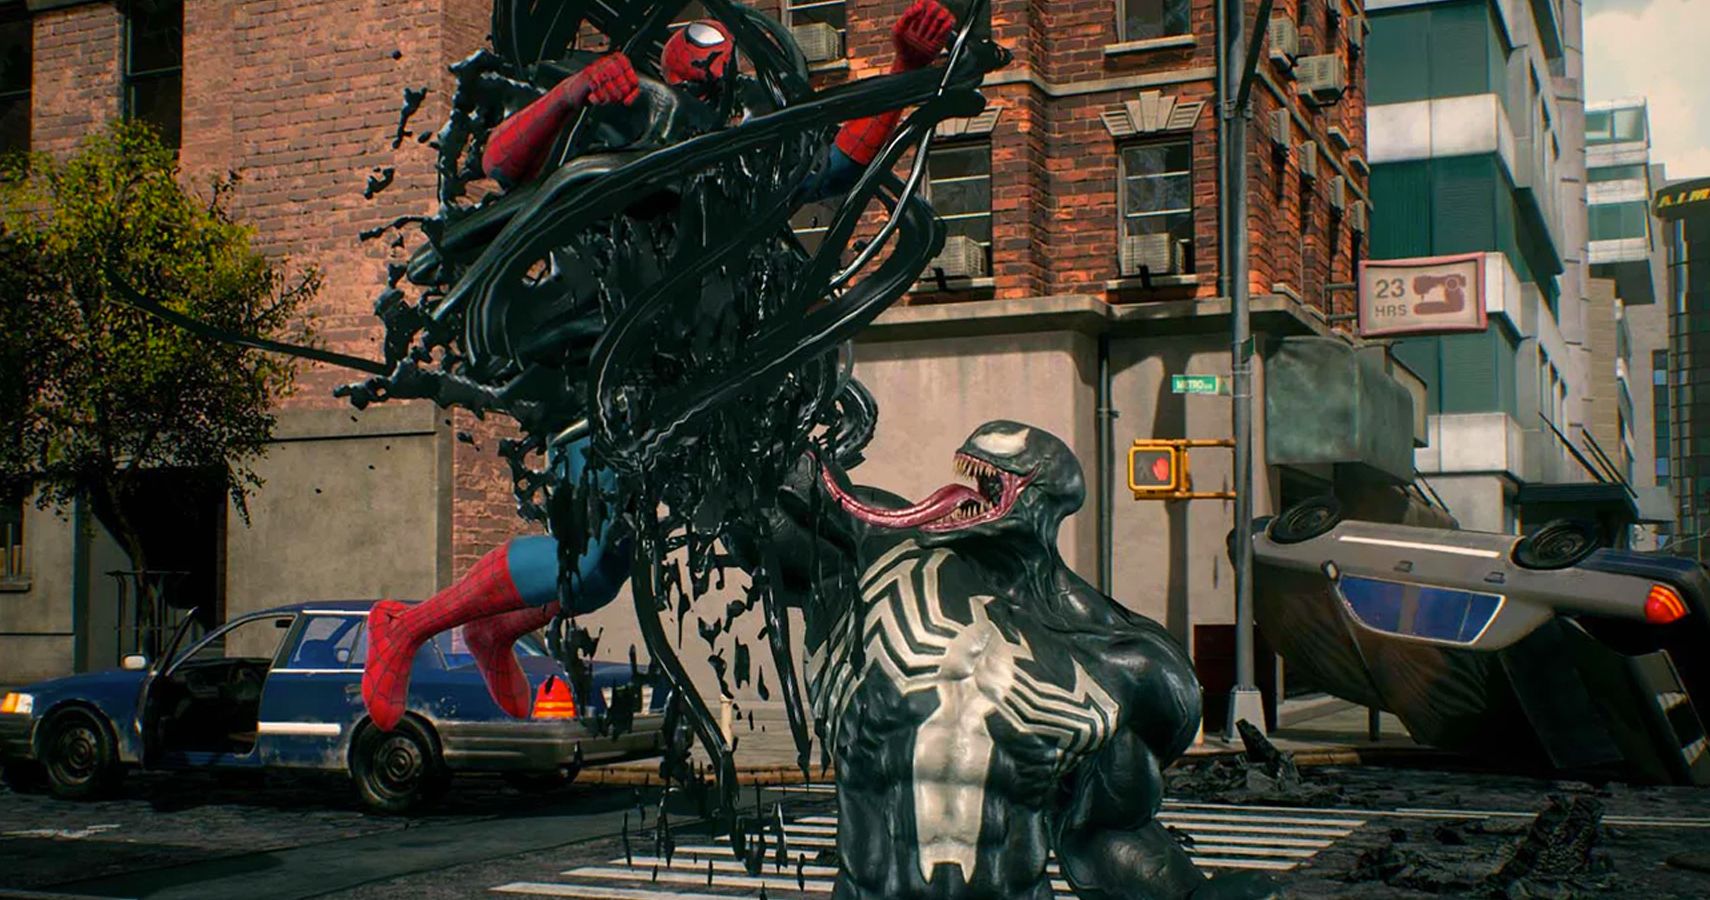 Rumor SpiderMan PS4 Sequel Features Venom Coming In 2021